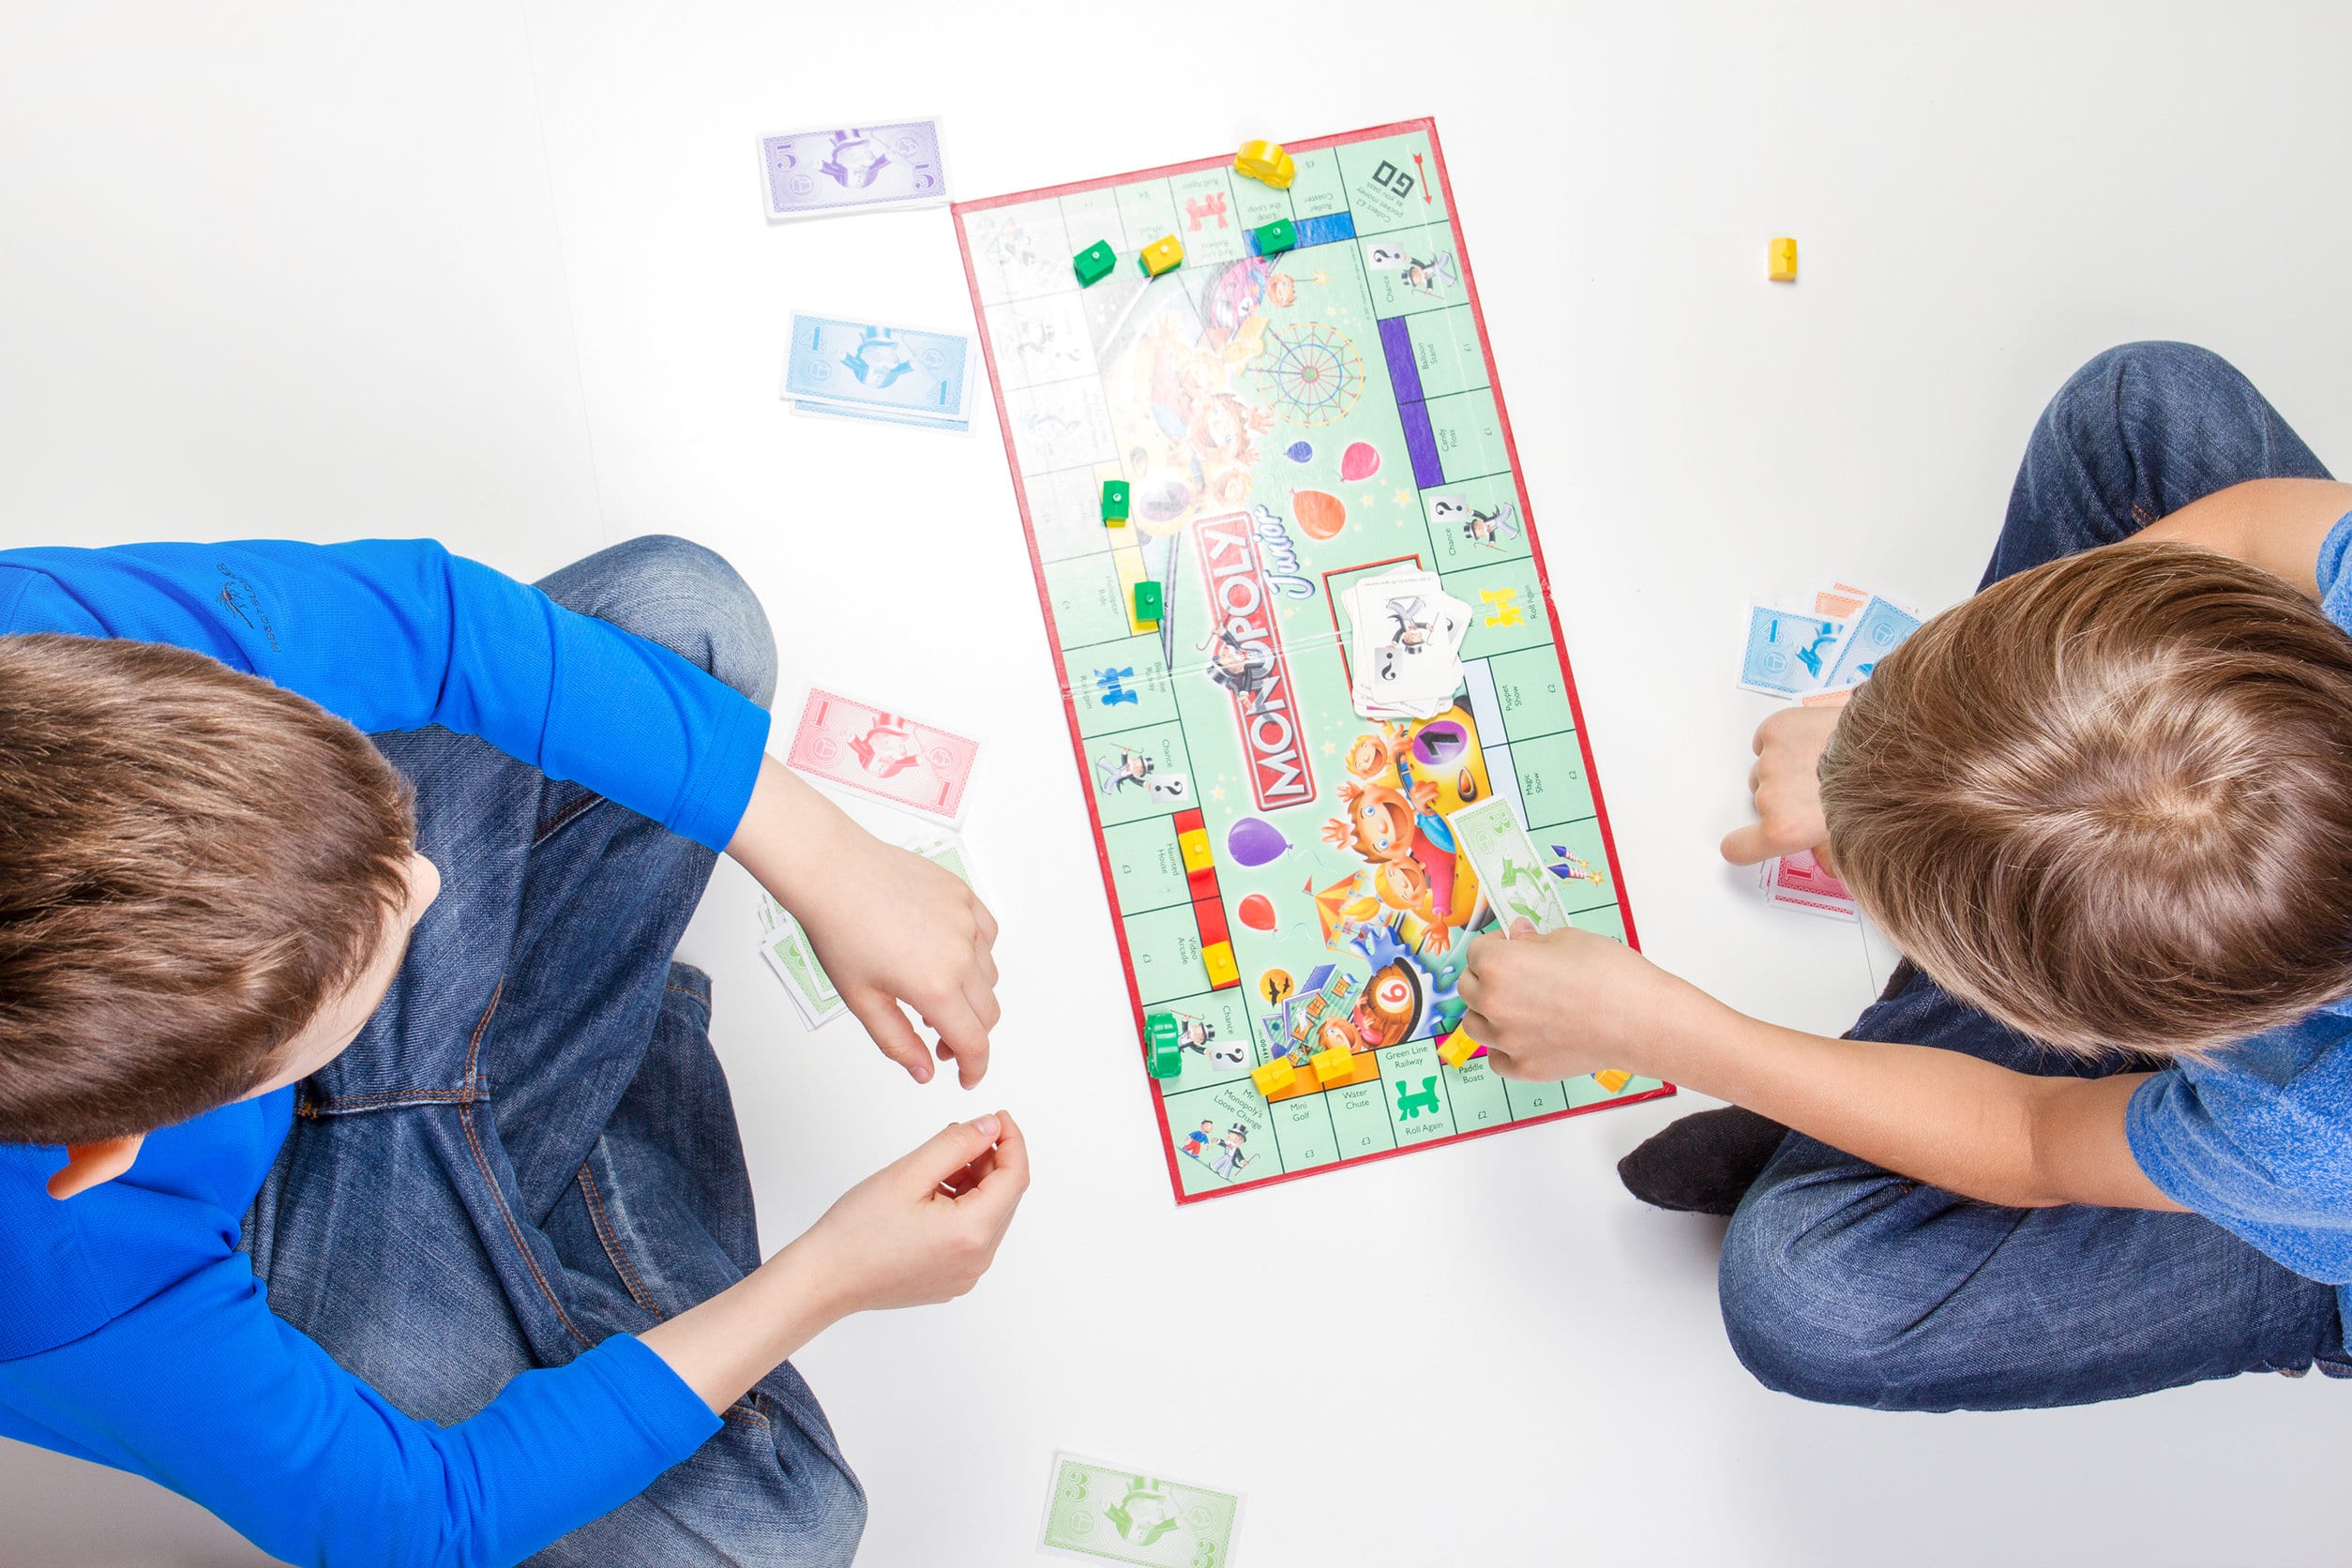 Dos niños pequeños jugando al monopoly, uno con un jersey azul y el otro con una camiseta azul